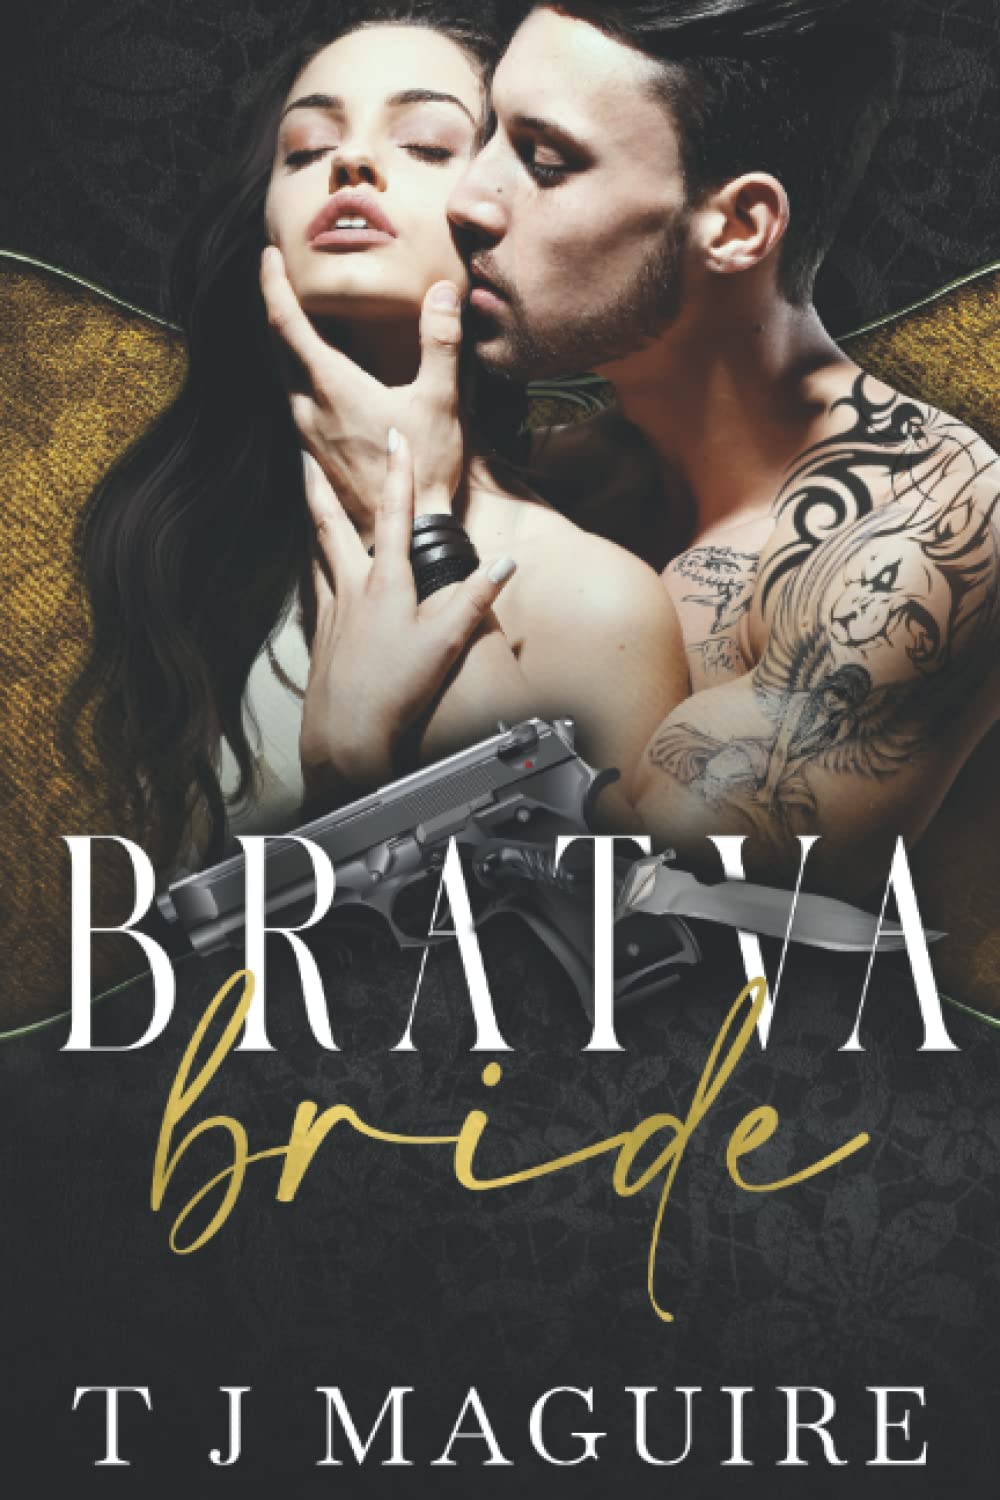 Bratva Bride by T. J. Maguire